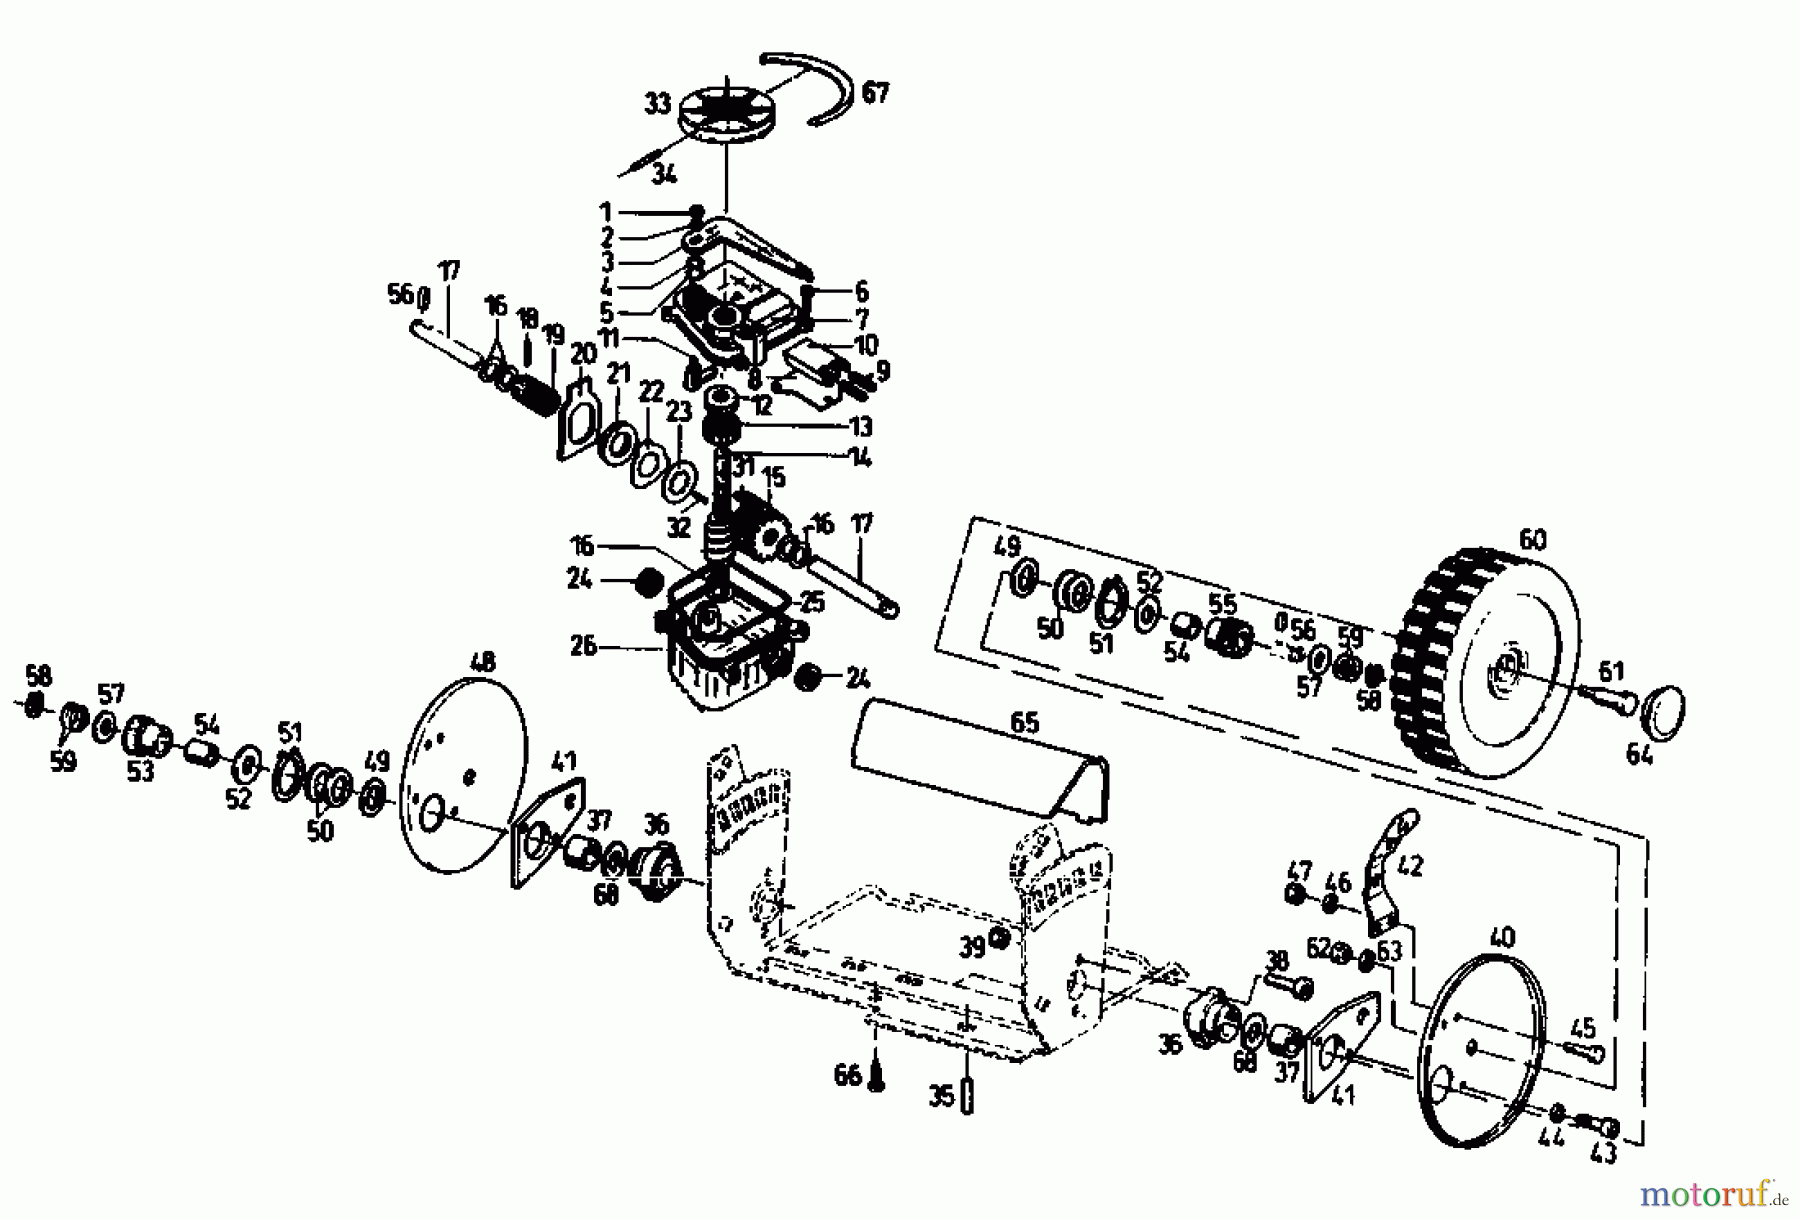  Gutbrod Petrol mower self propelled TURBO HBSR-2 T 04011.09  (1993) Gearbox